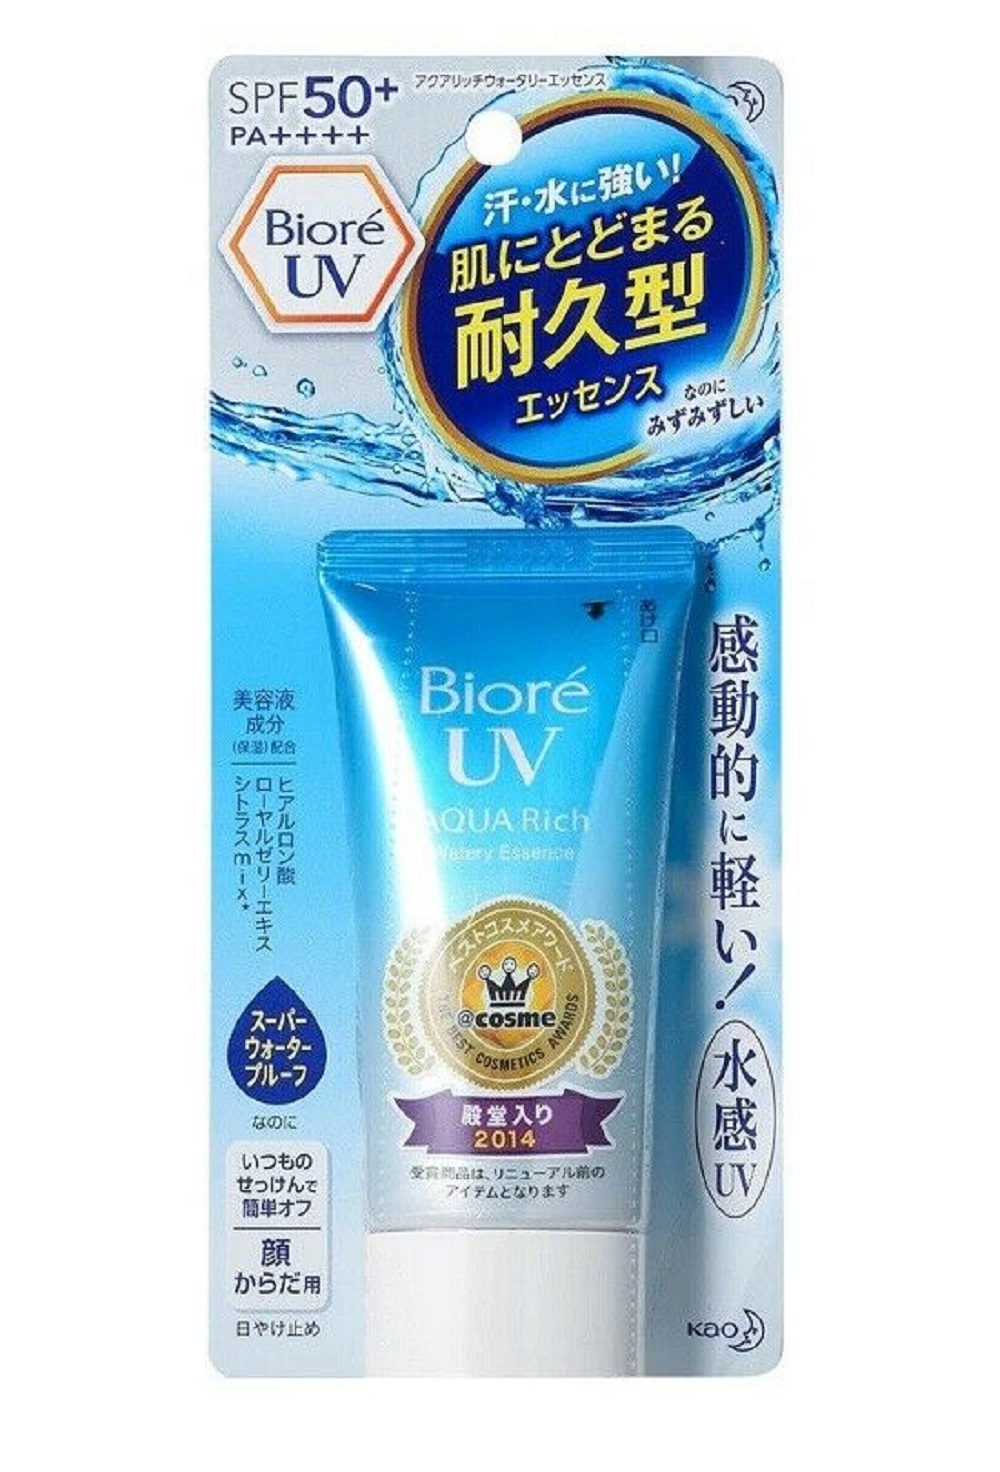 Biore Uv Aqua Rich Watery Essence Sunscreen Spf50 Pa 100 50g Walmart Com Walmart Com